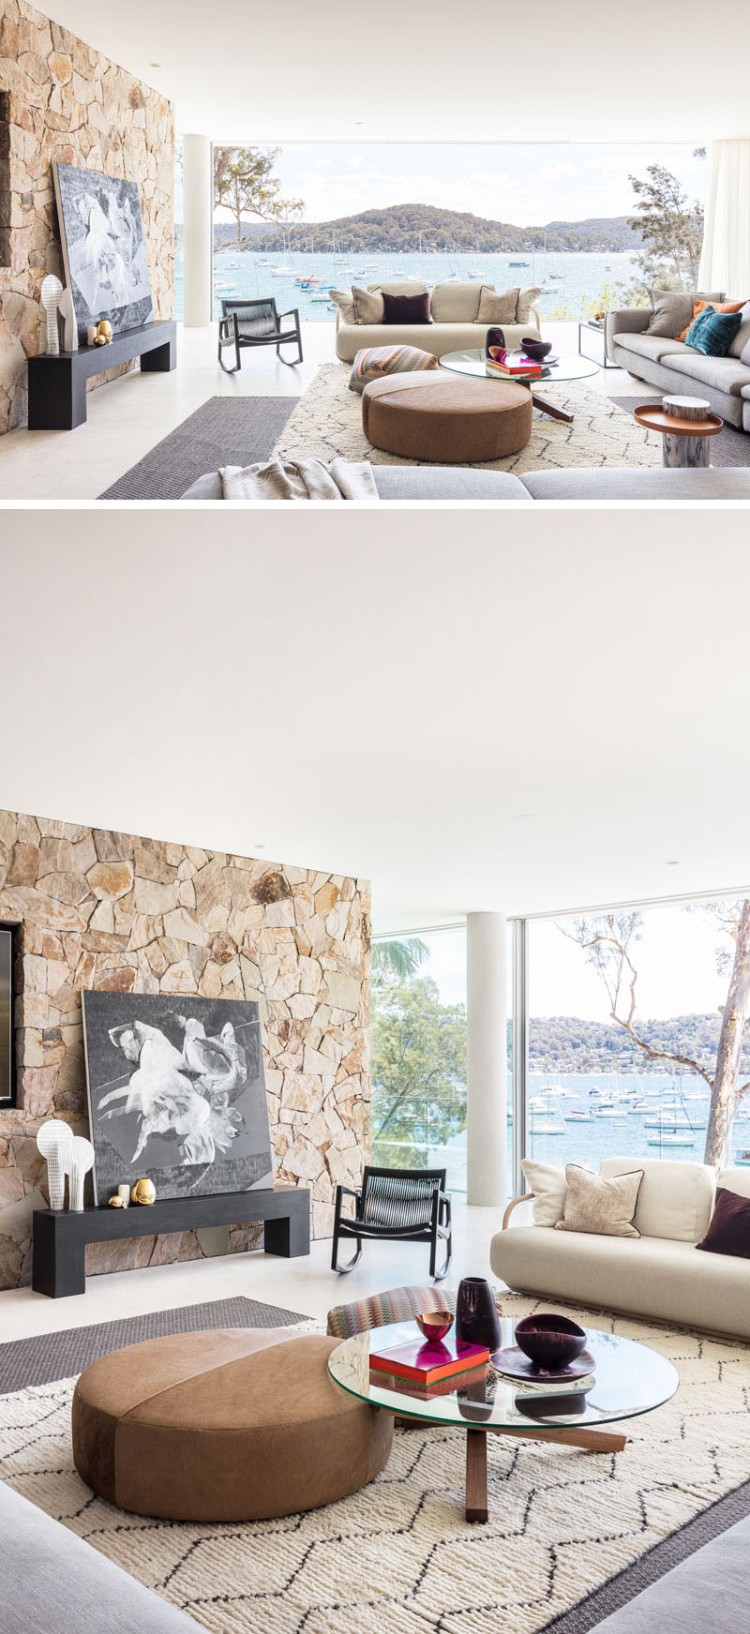 placage pierre de grès intérieur idée revêtement mural salon super moderne